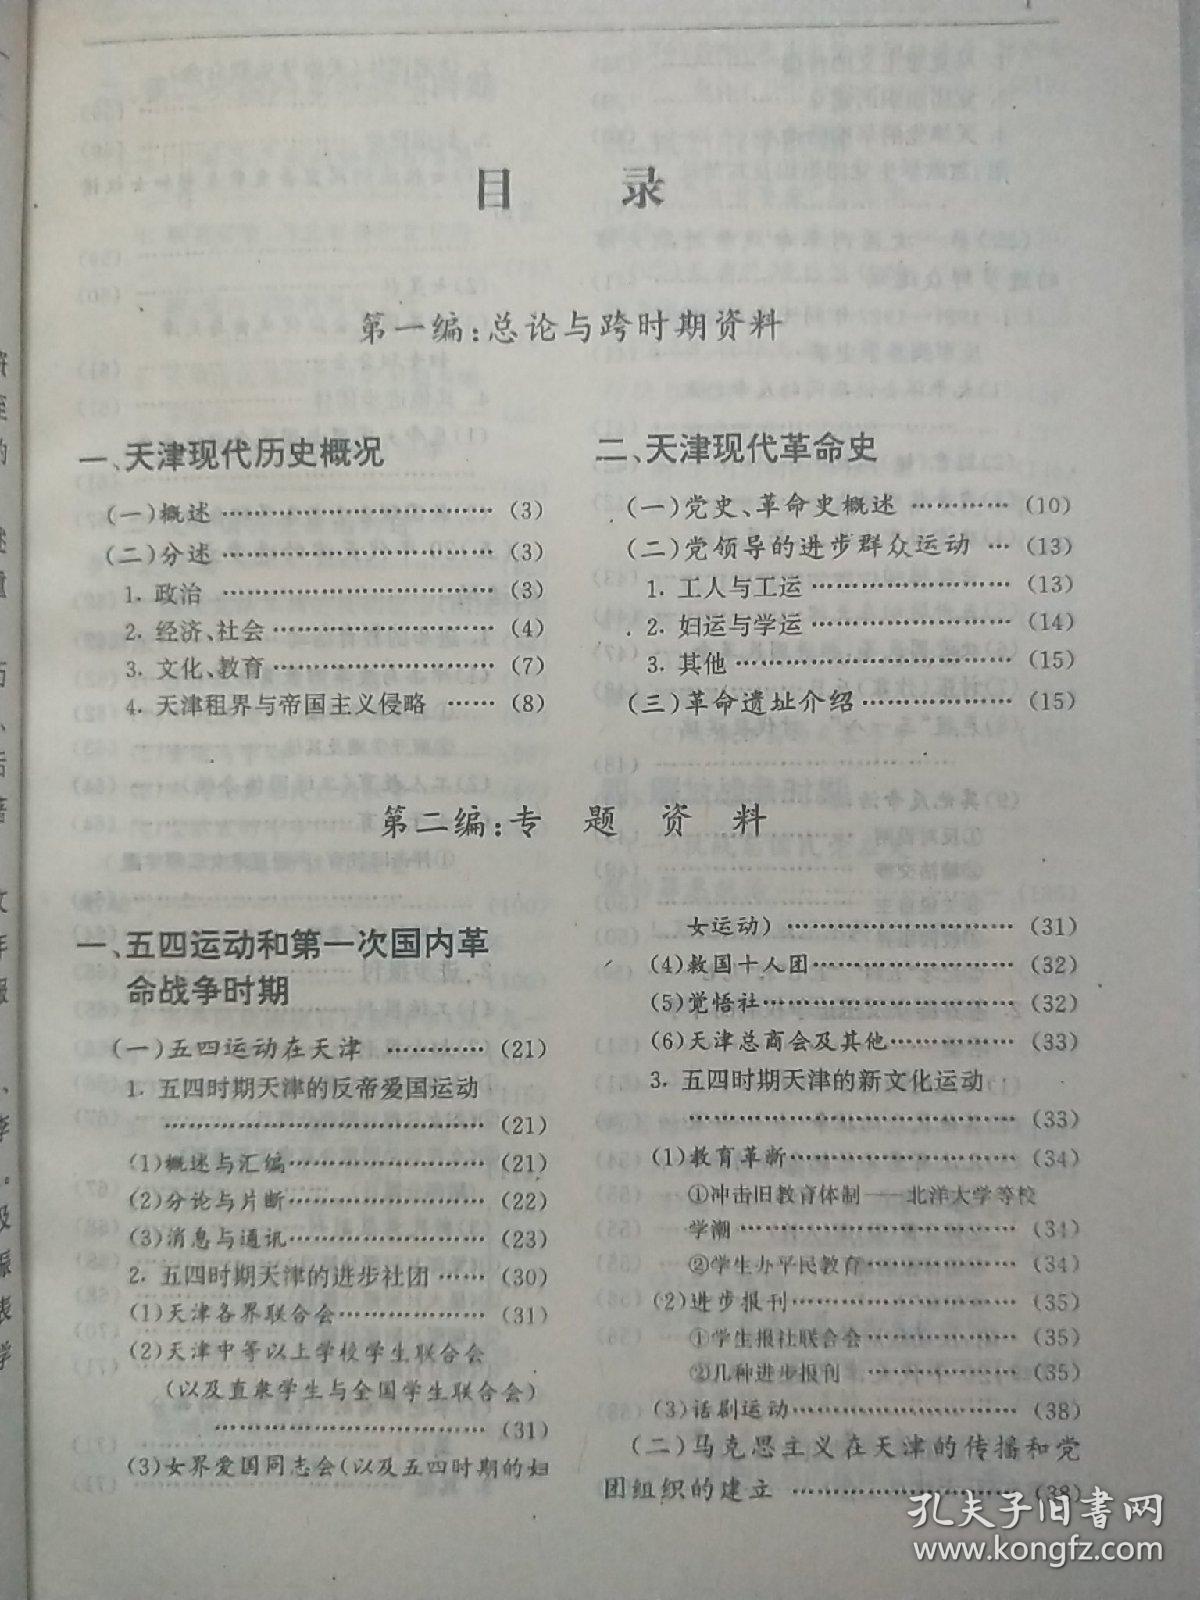 天津现代革命史资料目录索引。